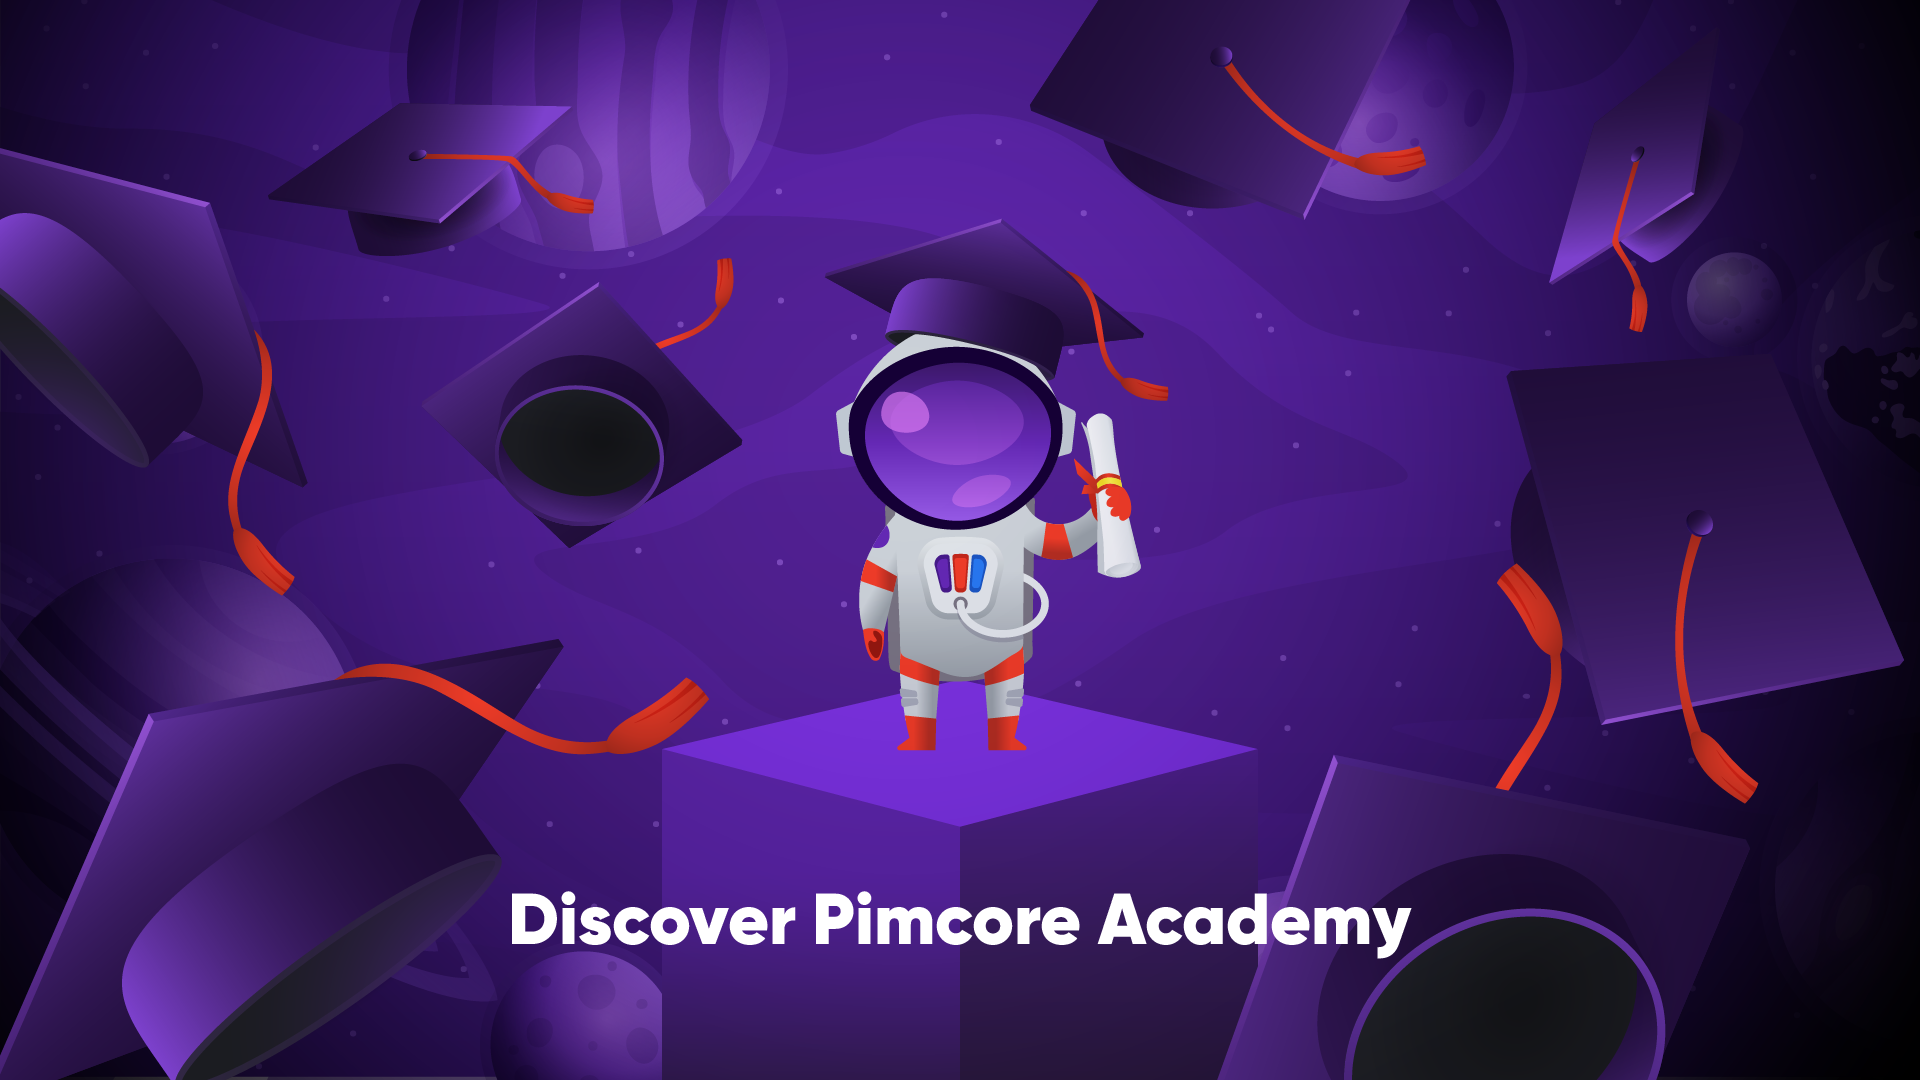 Pimcore Academy's image